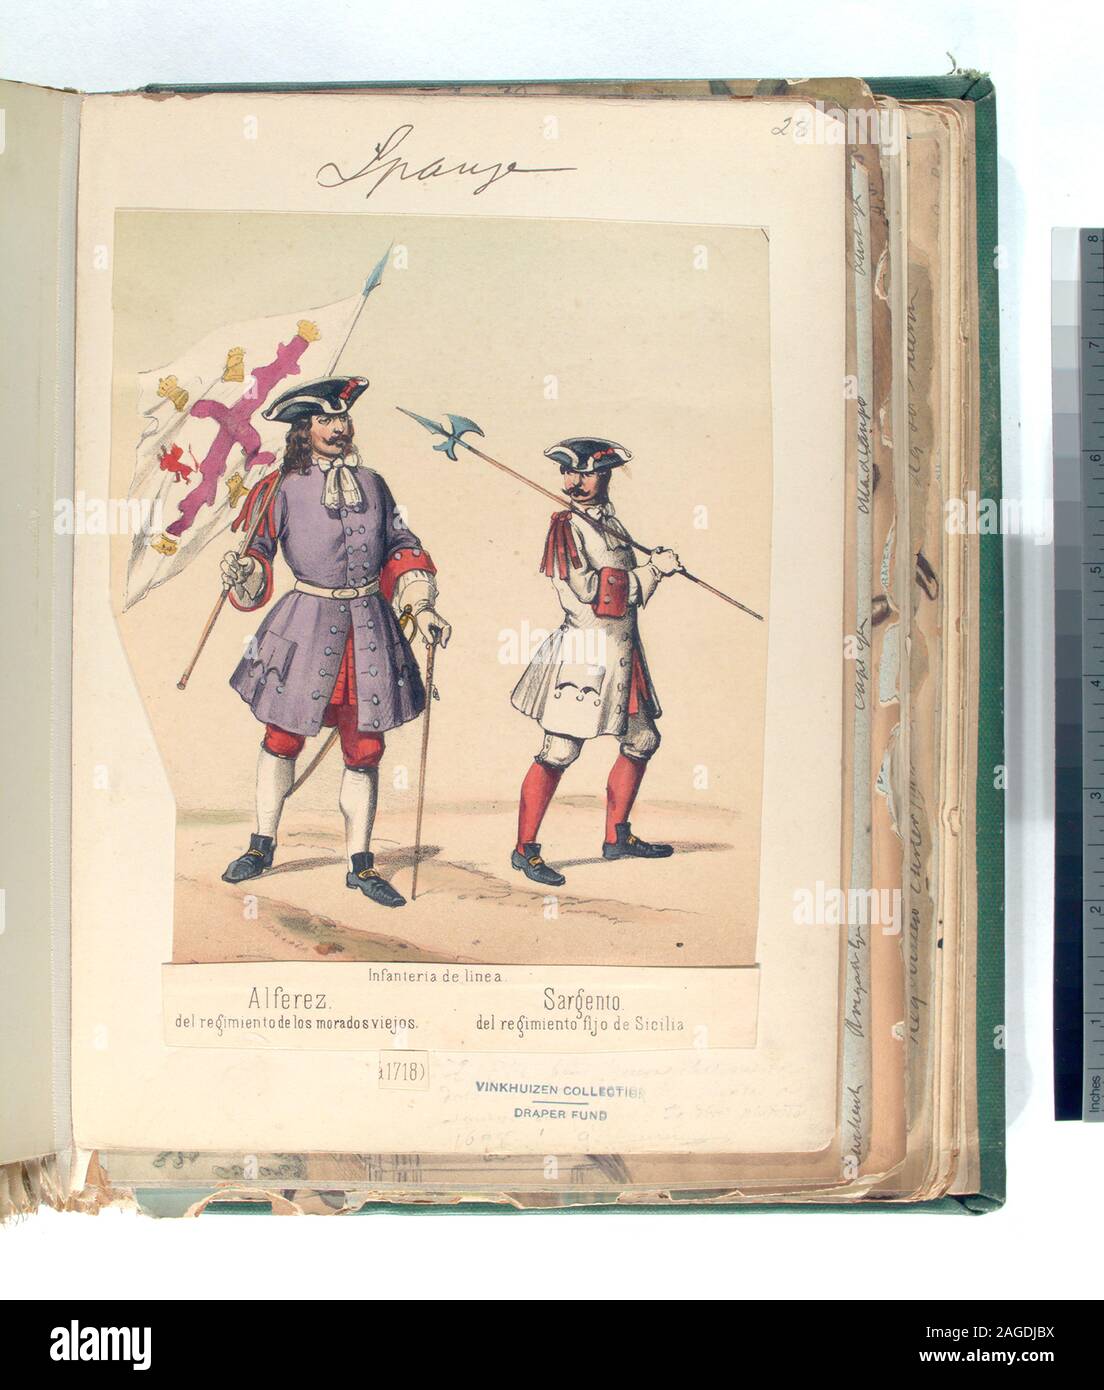 The Draper Fund; Infanteria de linea: [a] Alferez del regimiento de los morados viejos; [b] Sargento, del regimiento fijo de Sicilia.1718 Stock Photo